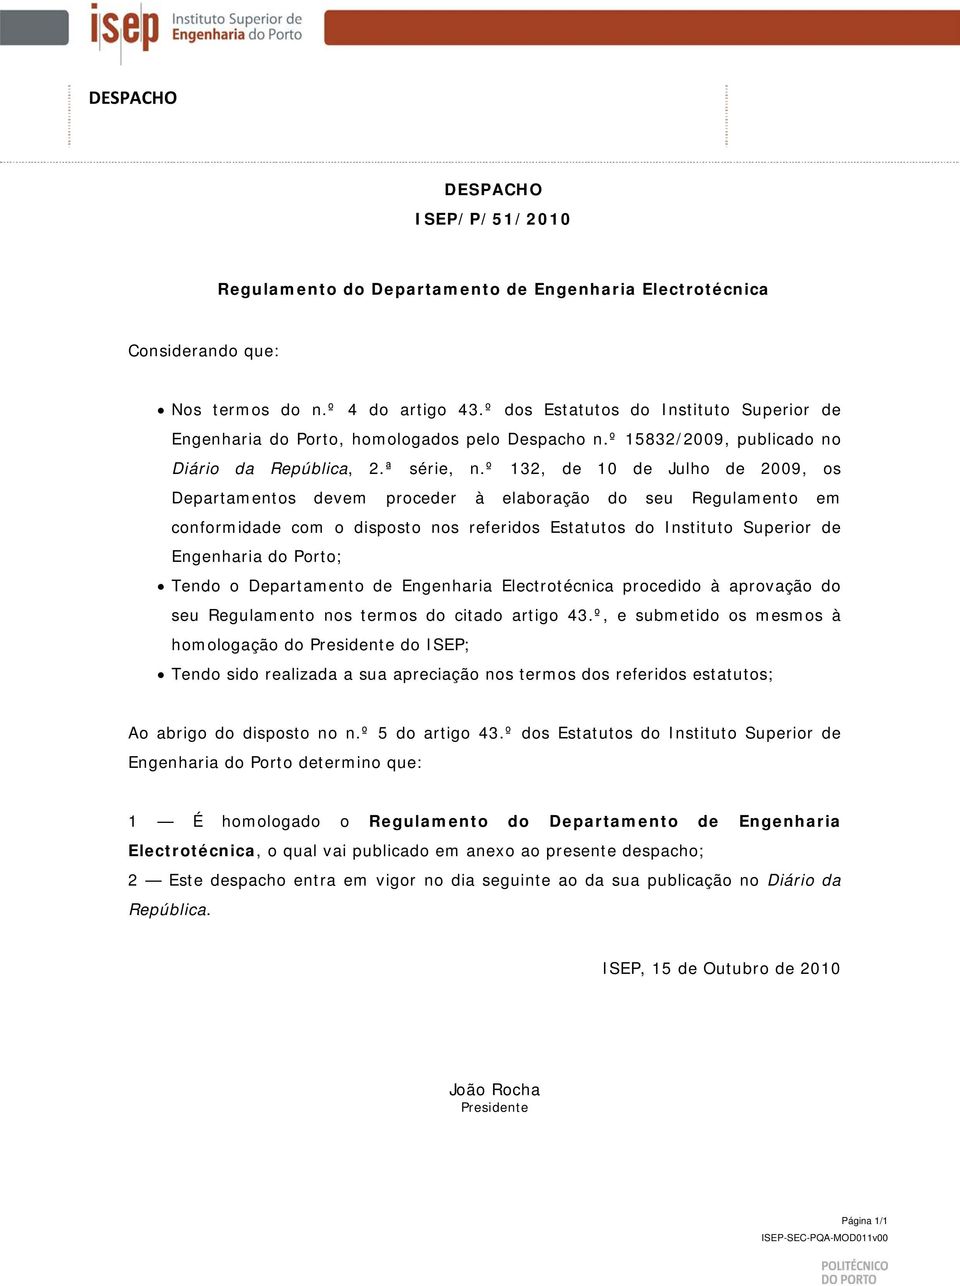 º 132, de 10 de Julho de 2009, os Departamentos devem proceder à elaboração do seu Regulamento em conformidade com o disposto nos referidos Estatutos do Instituto Superior de Engenharia do Porto;